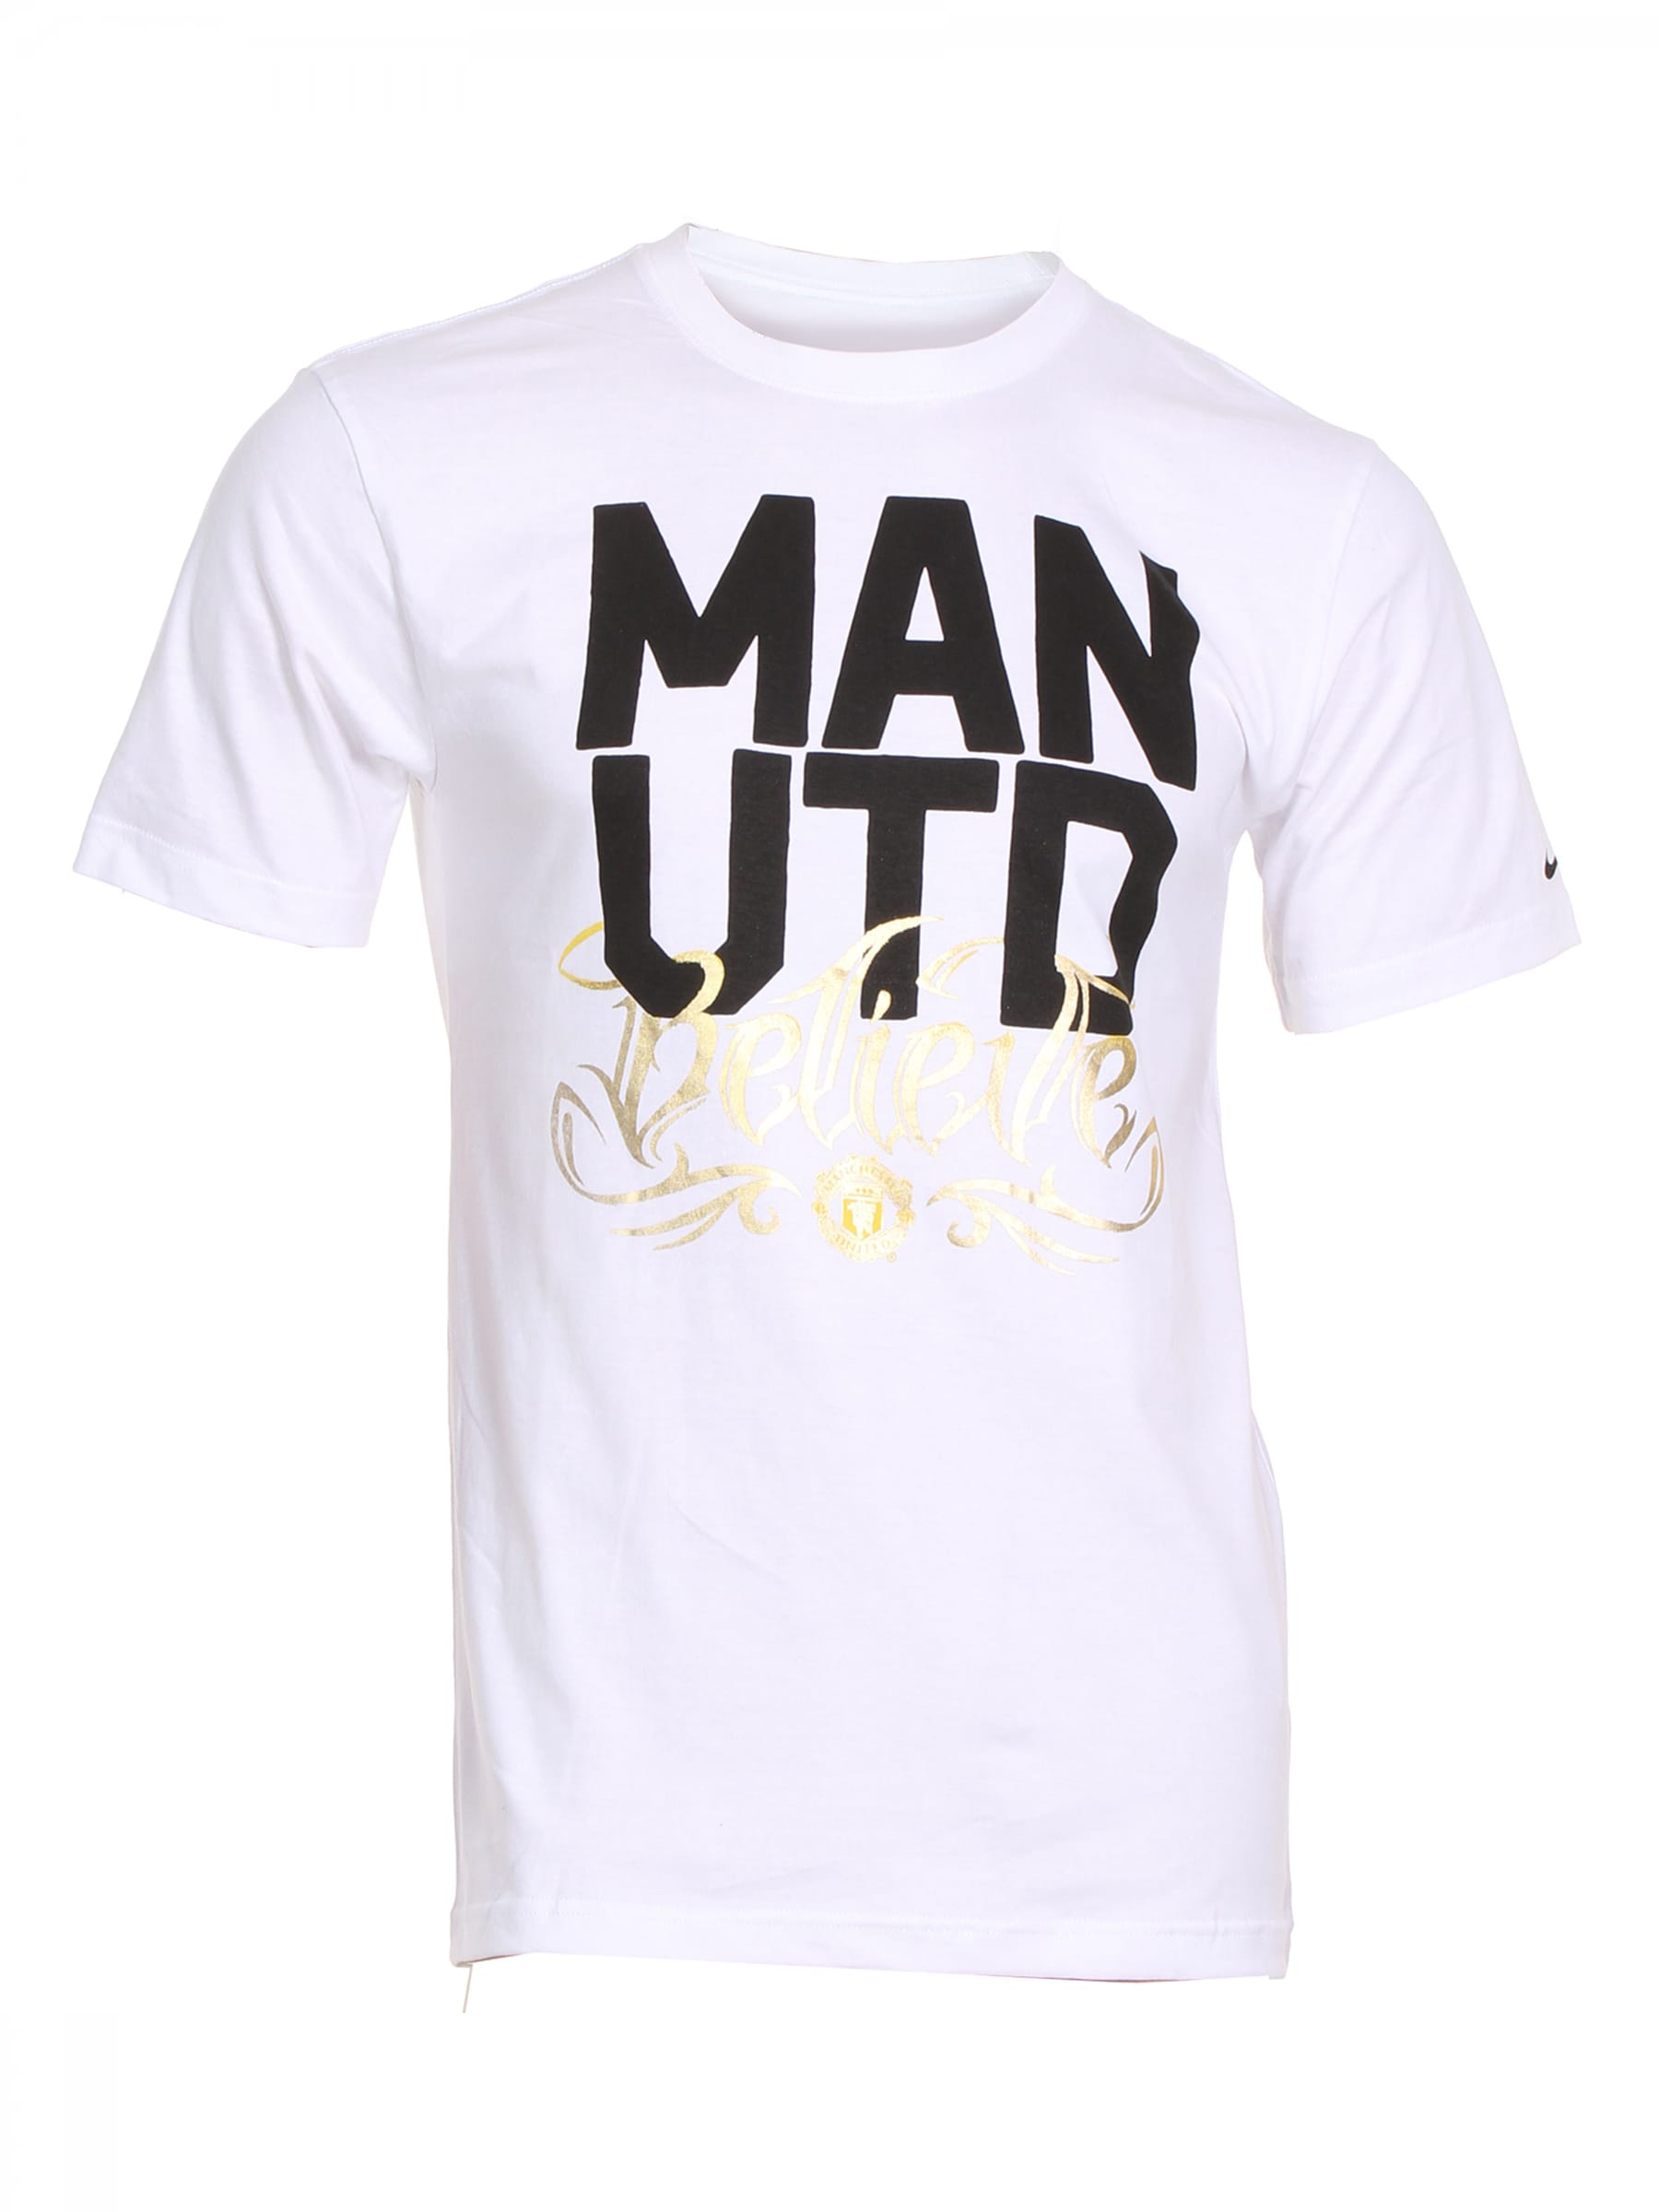 Nike Mens Manchester United White T-shirt